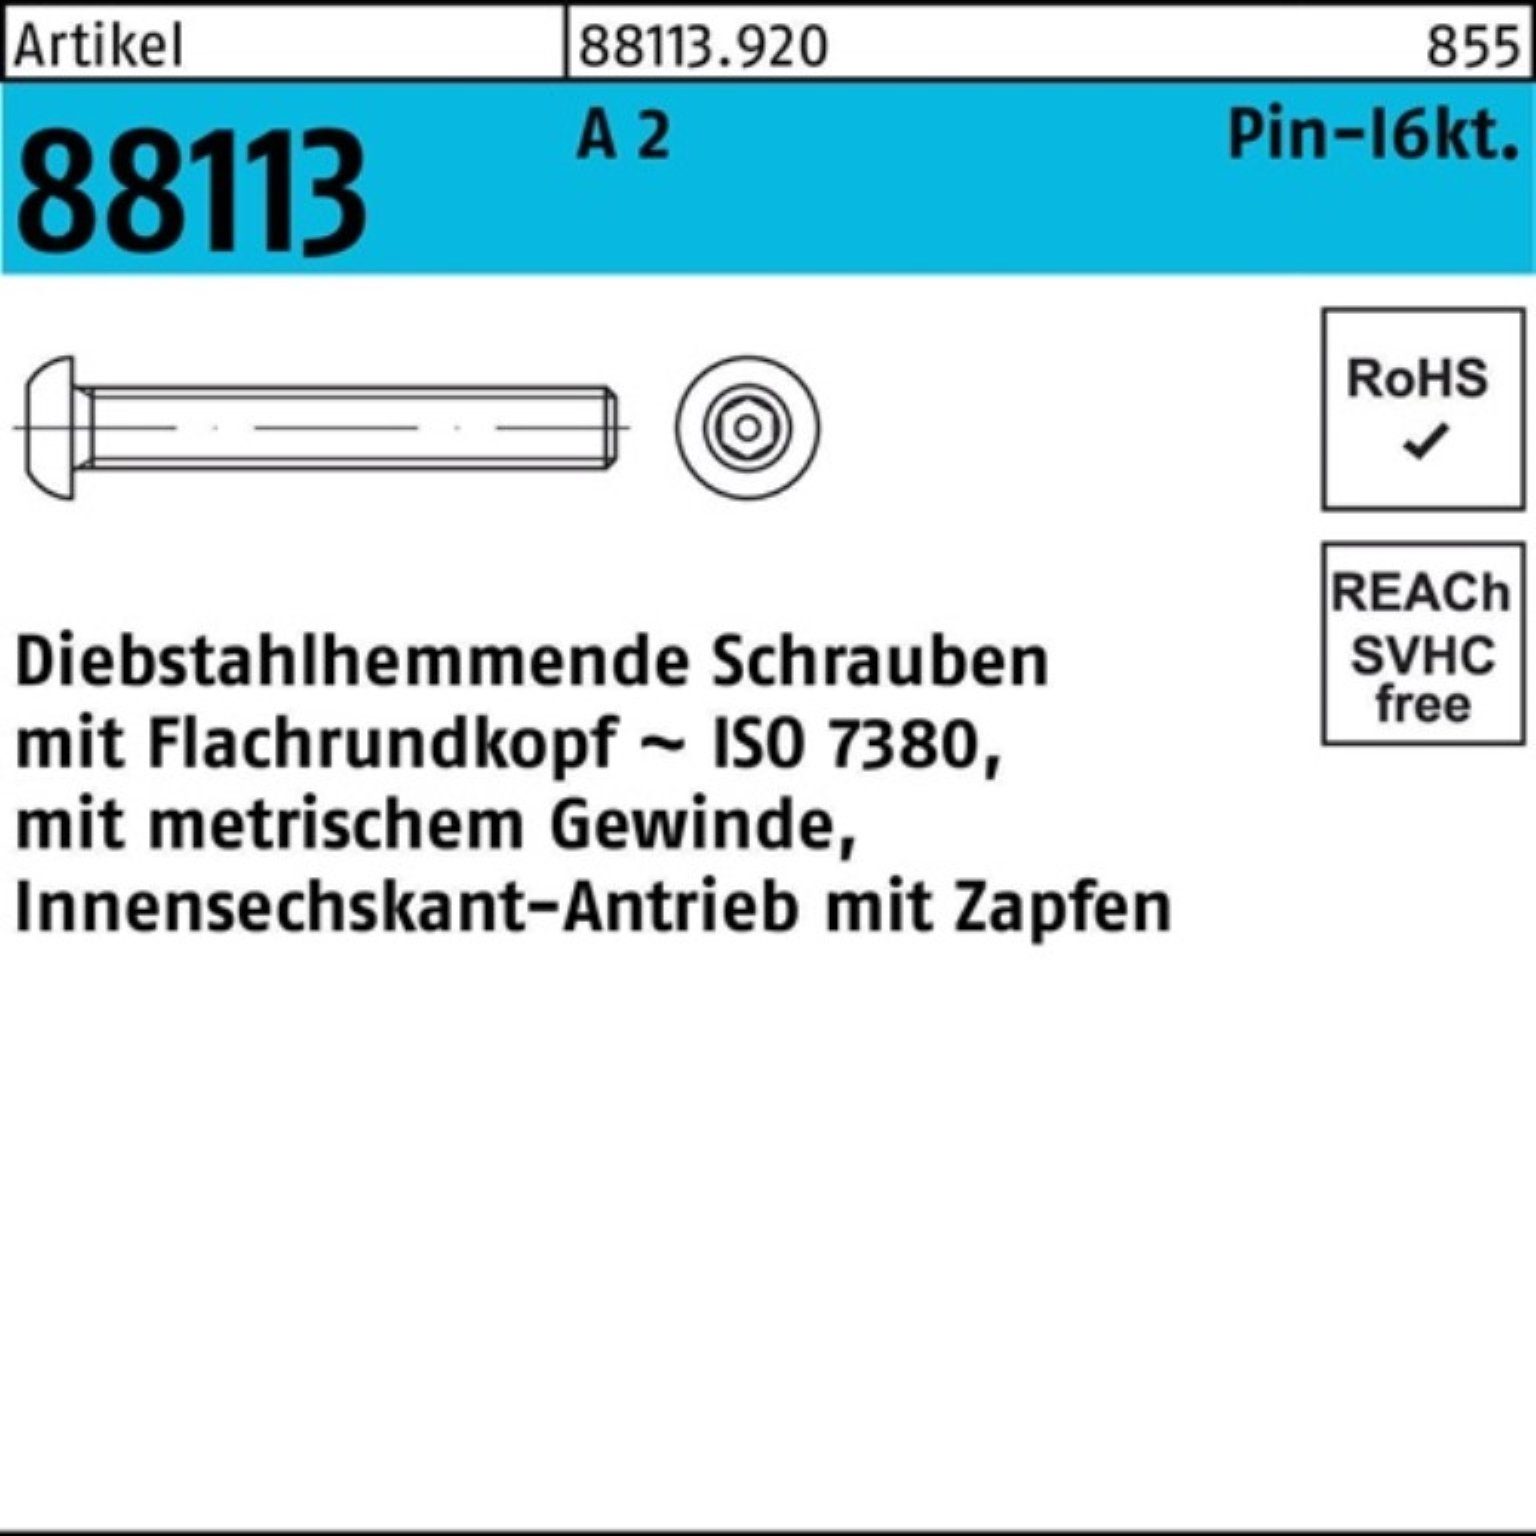 Zapfen Reyher Schraube Pack 100er R Schraube Innen-6kt A 10 M5x 88113 diebstahlh. 2 30